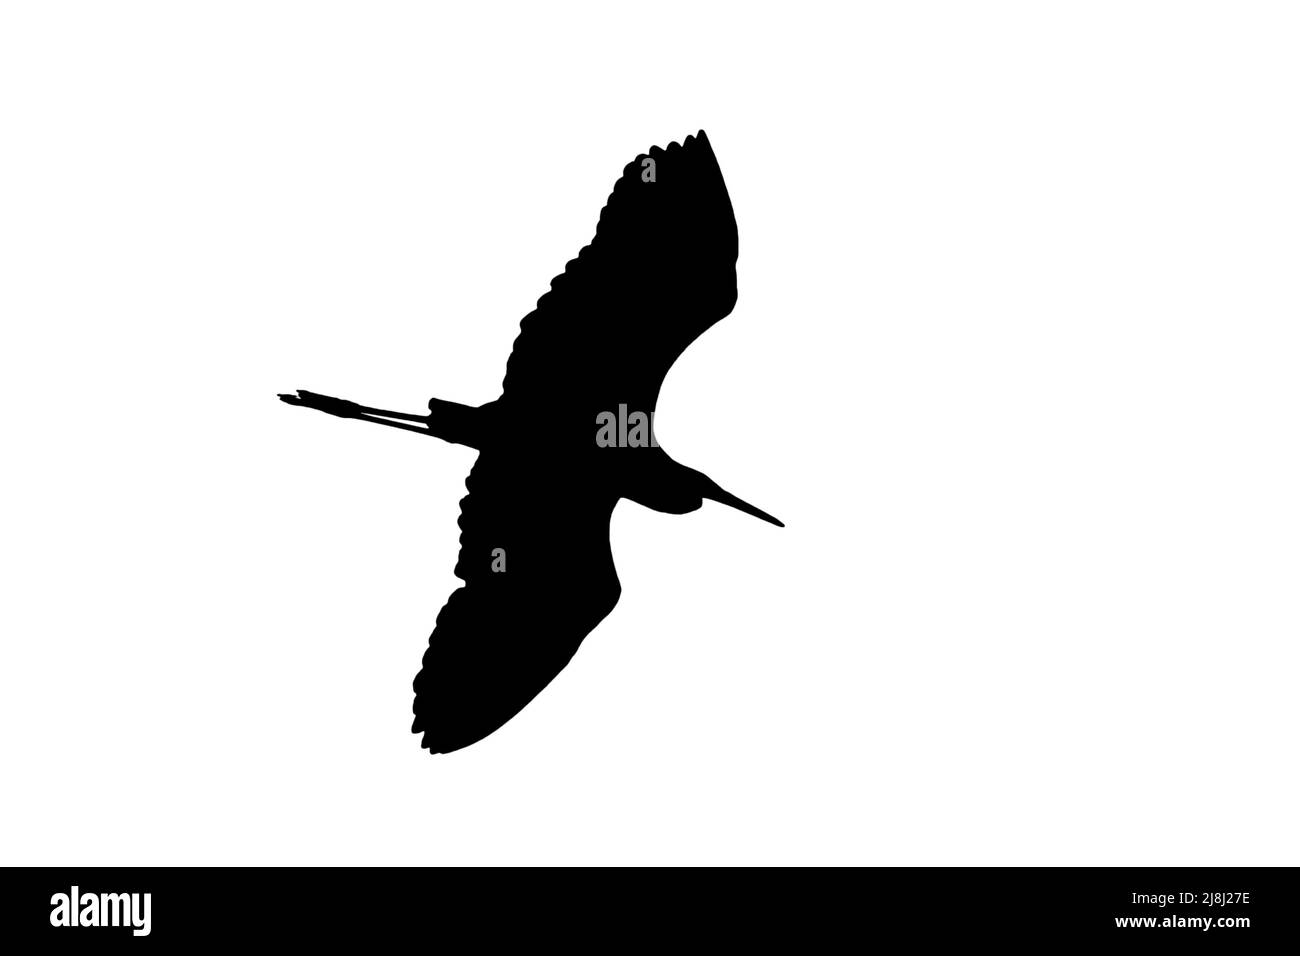 Silhouette de grande aigrette blanche / aigrette commune (Ardea alba) en vol, entourée d'un fond blanc pour montrer les formes d'ailes, de tête et de queue Banque D'Images